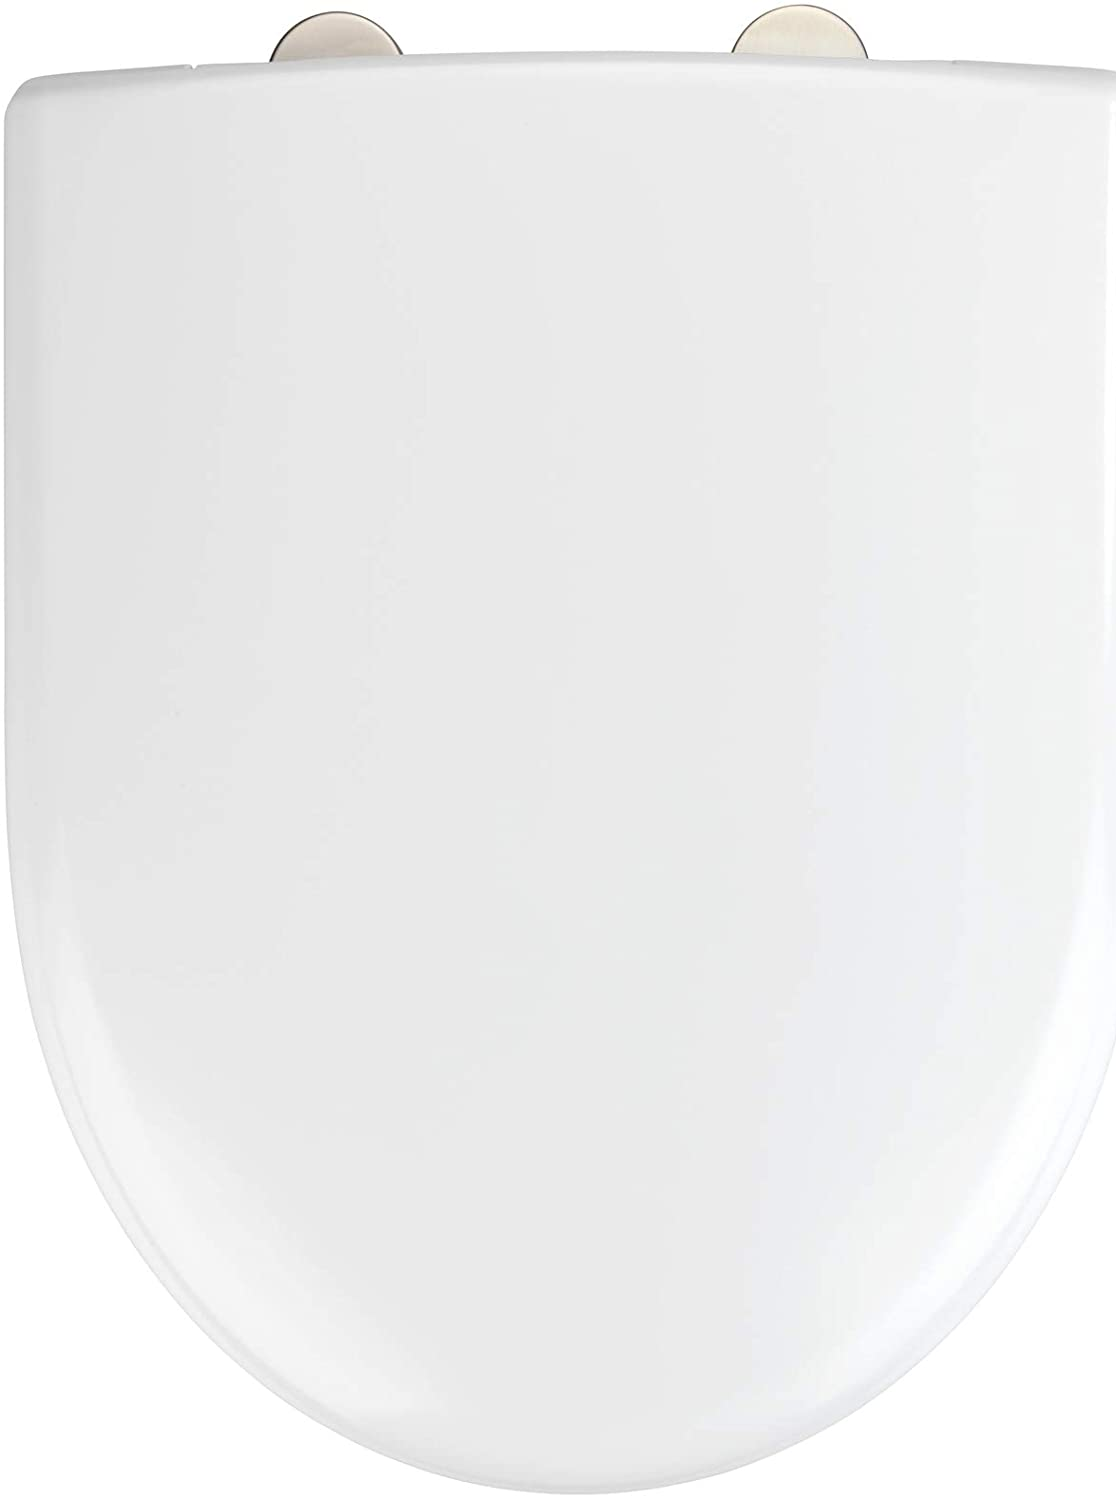 WC-Sitz Exclusive Nr. 7 - Antibakterieller Toiletten-Sitz mit Absenkautomatik, Duroplast, 36.5 x 45.5 cm, Weiß